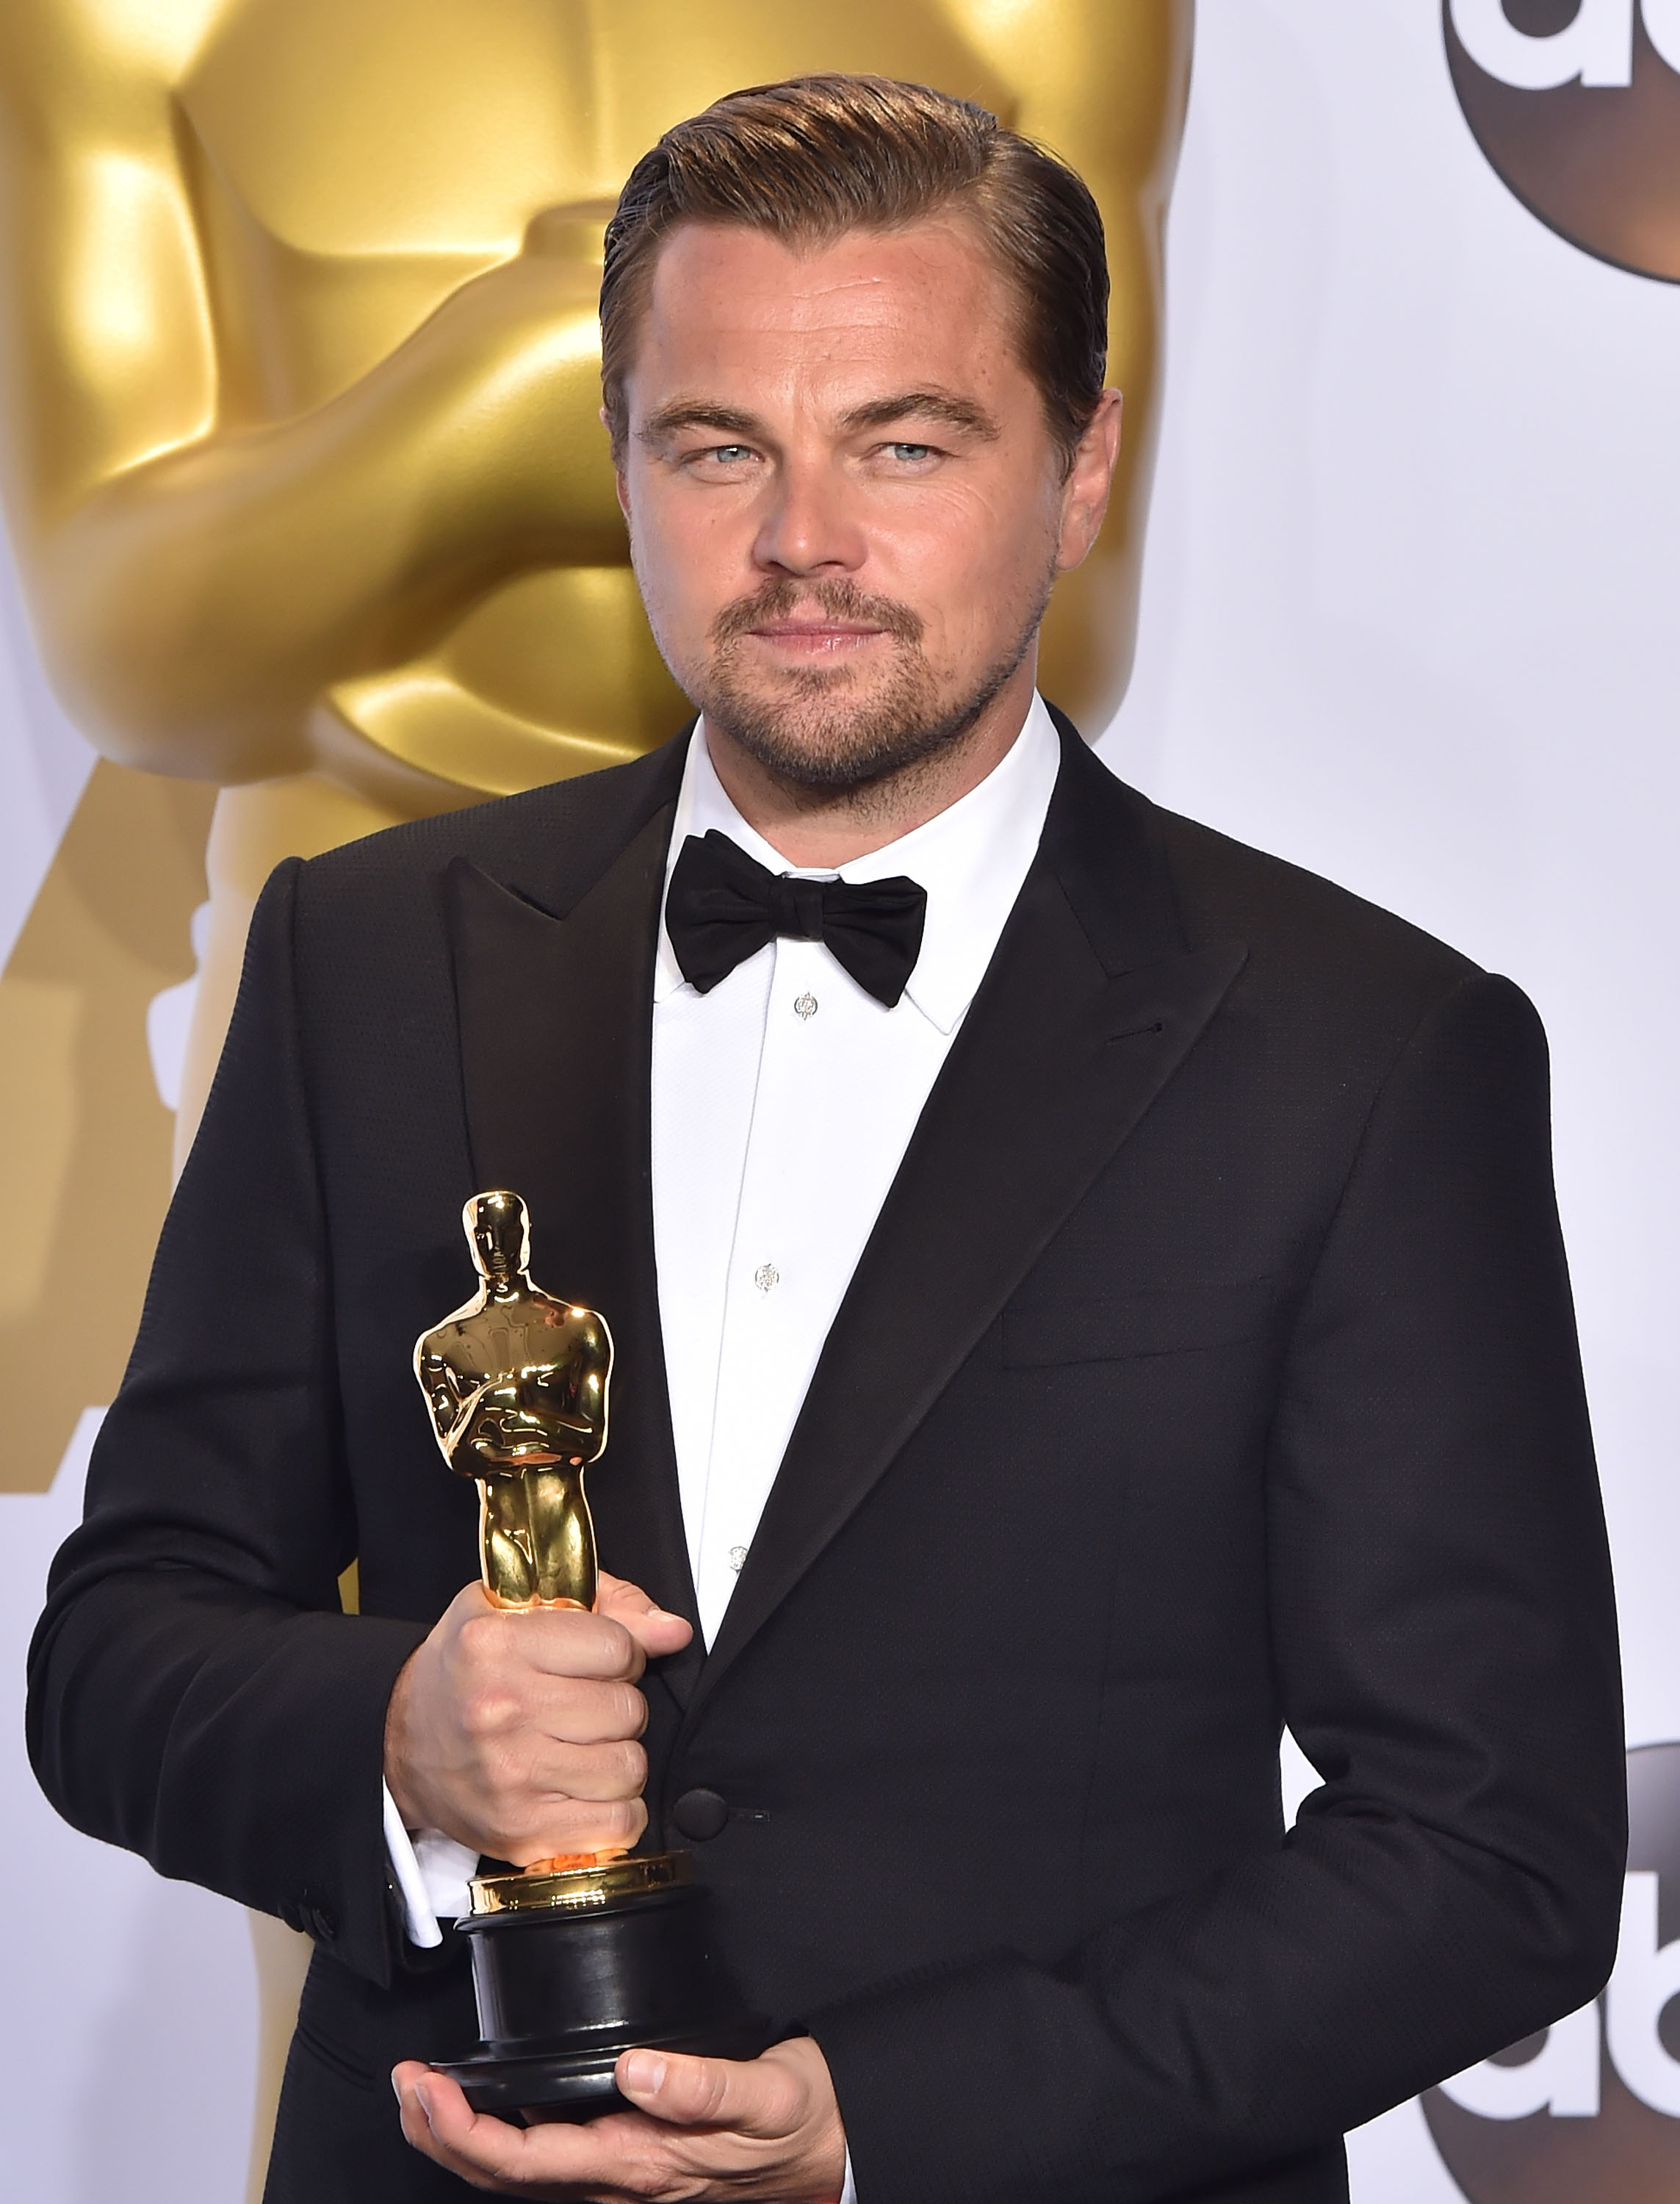 Leonardo DiCaprio pose avec sa statuette dorée lors de la 88e cérémonie annuelle des Oscars, le 28 février 2016 | Source : Getty Images